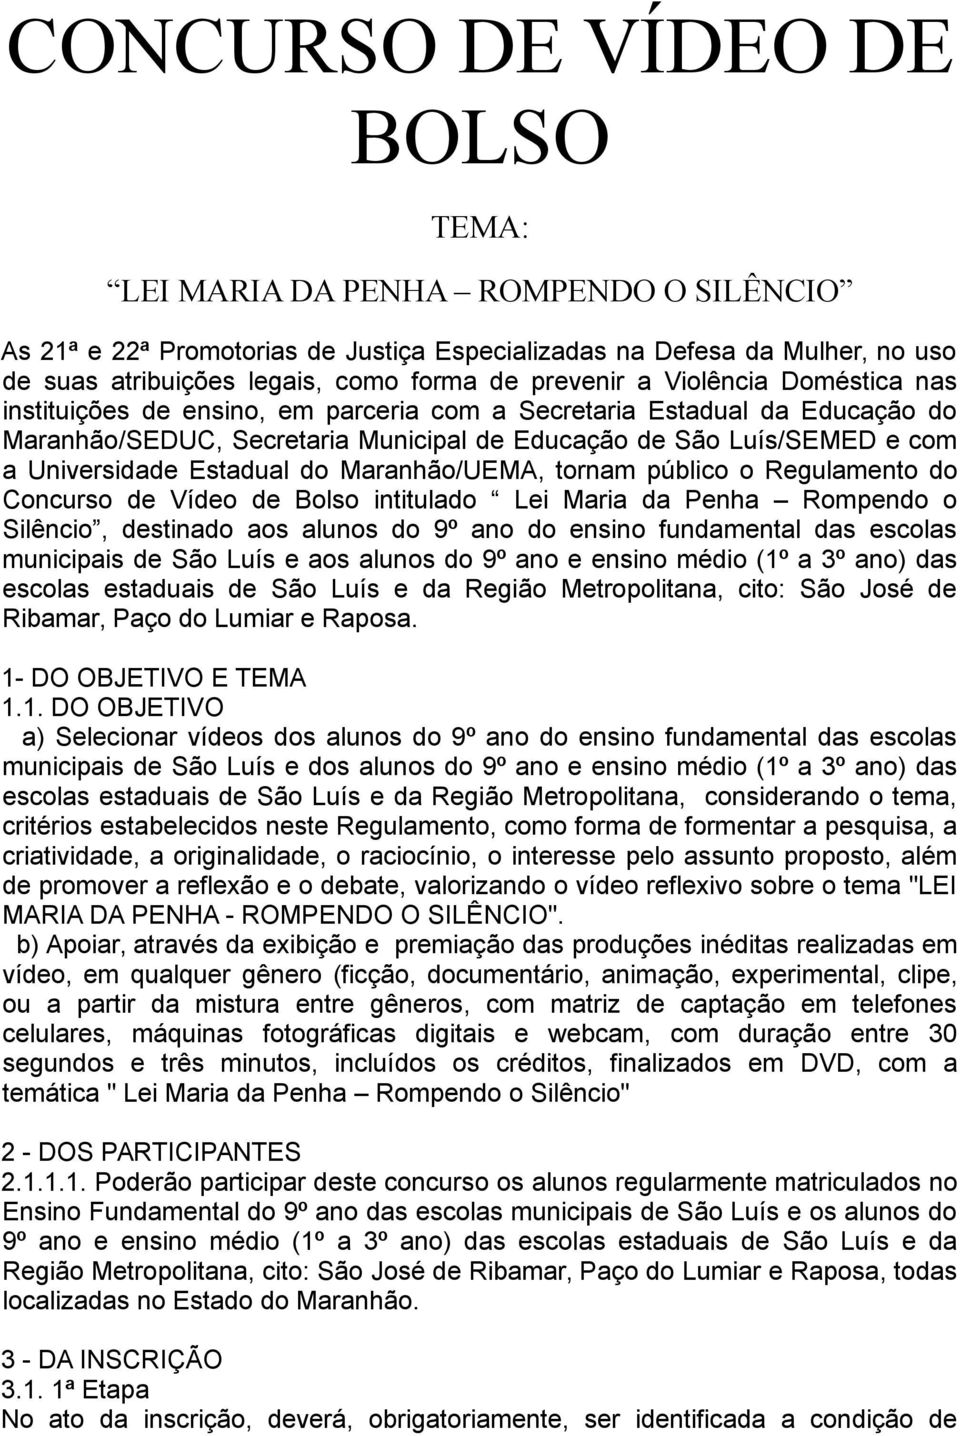 Estadual do Maranhão/UEMA, tornam público o Regulamento do Concurso de Vídeo de Bolso intitulado Lei Maria da Penha Rompendo o Silêncio, destinado aos alunos do 9º ano do ensino fundamental das